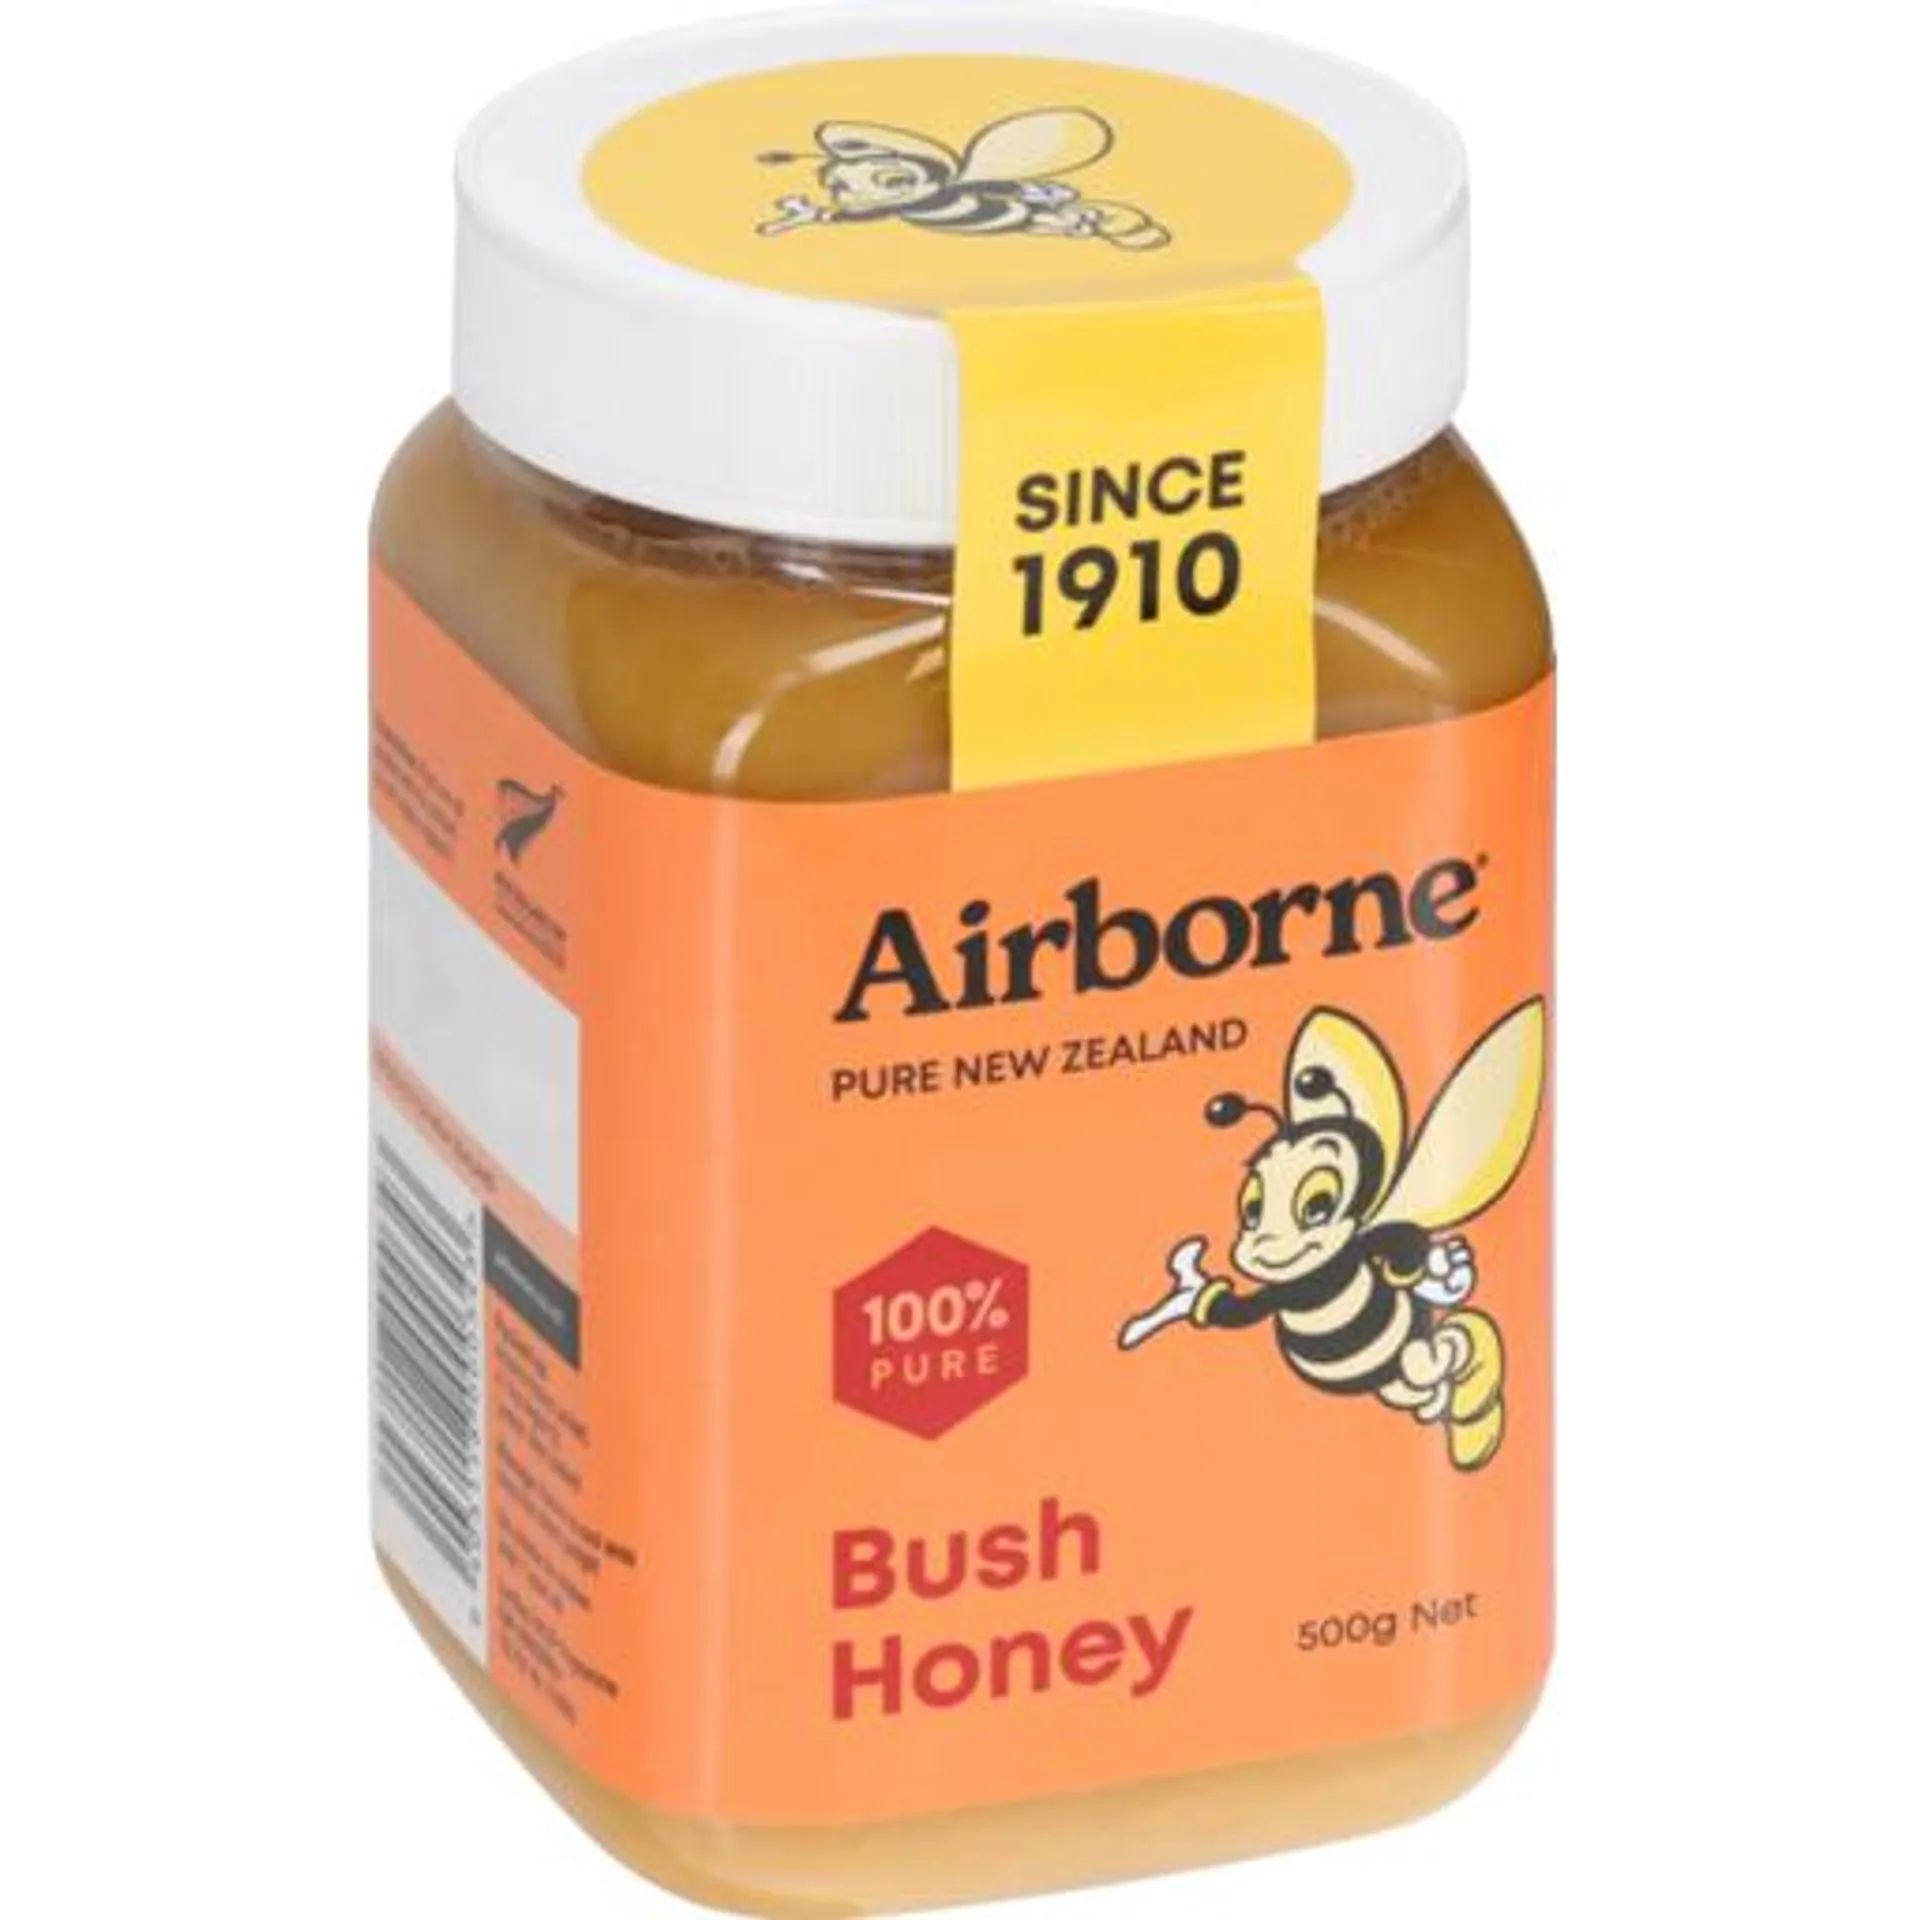 Airborne Honey Bush 500g